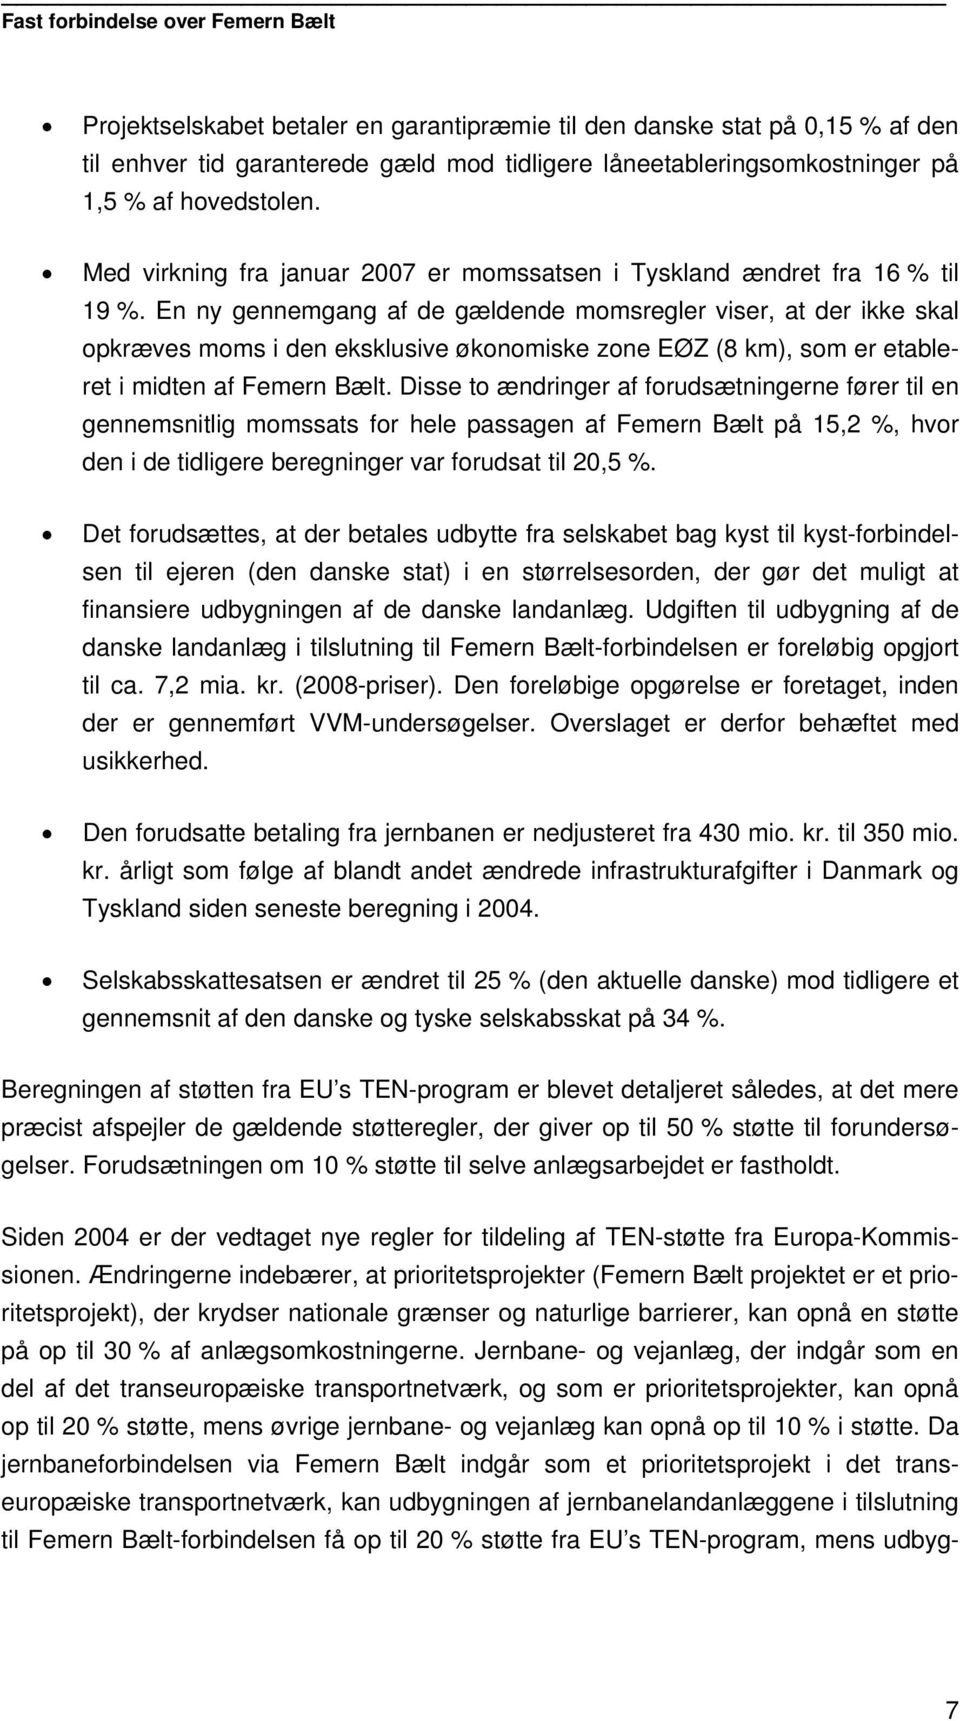 En ny gennemgang af de gældende momsregler viser, at der ikke skal opkræves moms i den eksklusive økonomiske zone EØZ (8 km), som er etableret i midten af Femern Bælt.